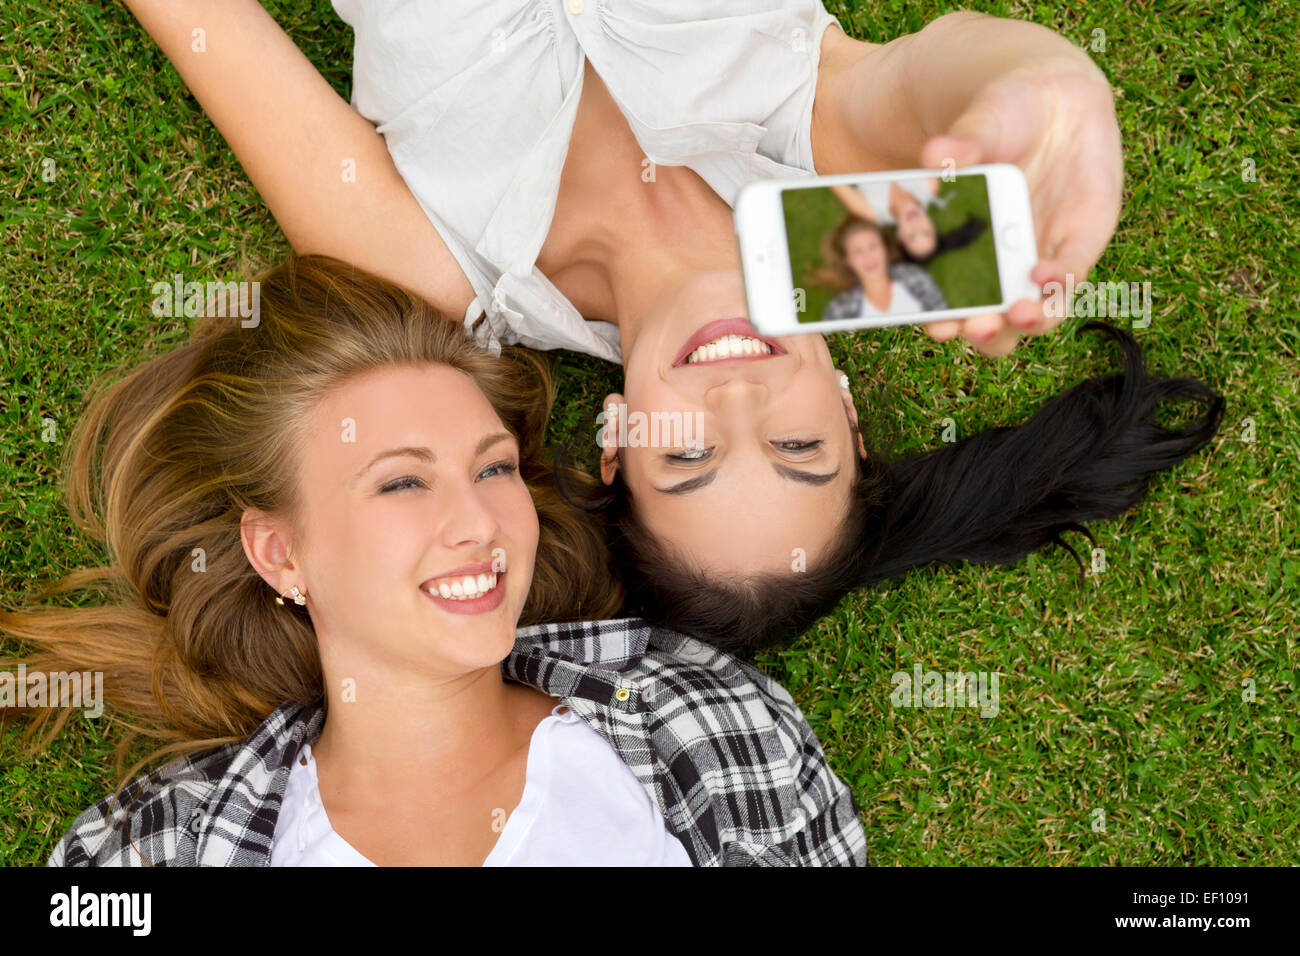 Сделал из друга девочку. Подружки лежат на траве. Встреча друзей на природе картинки. Селфи на траве. Идеи для фото лежа с подругой.